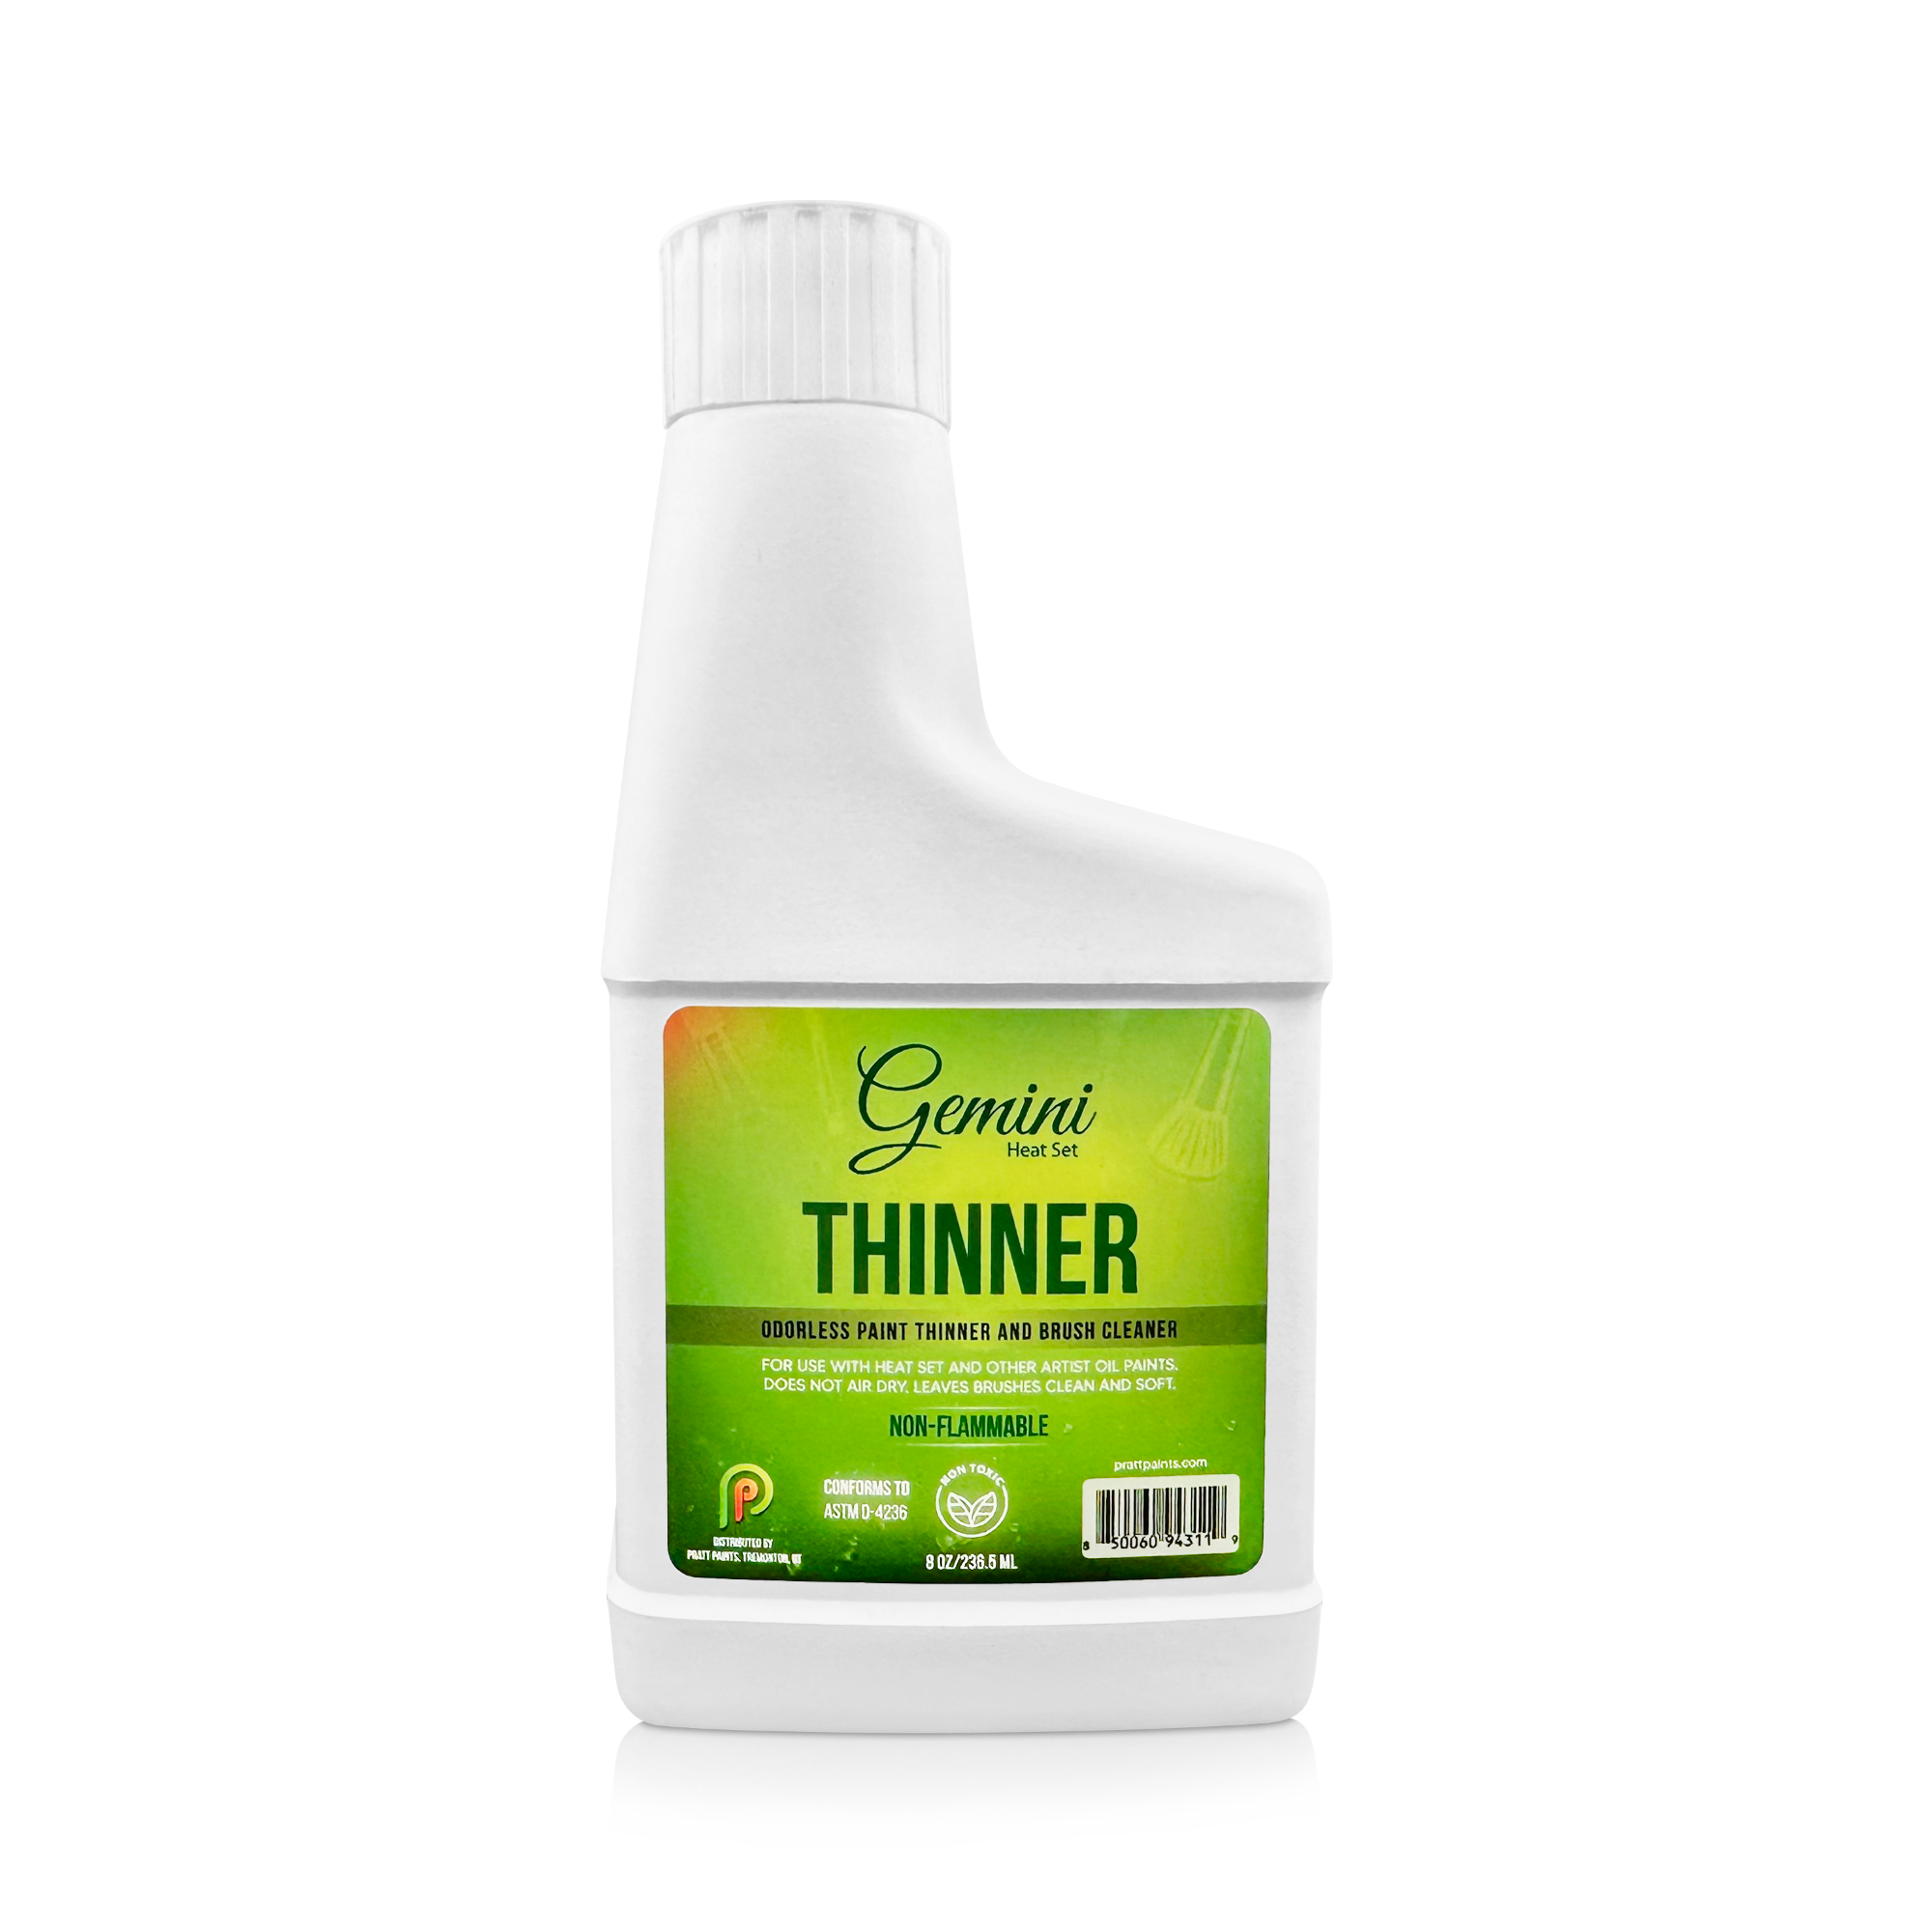 ~USA ONLY~~ Gemini Thinner - Odorless Paint Thinner & Brush Cleaner 8 oz. - #5811